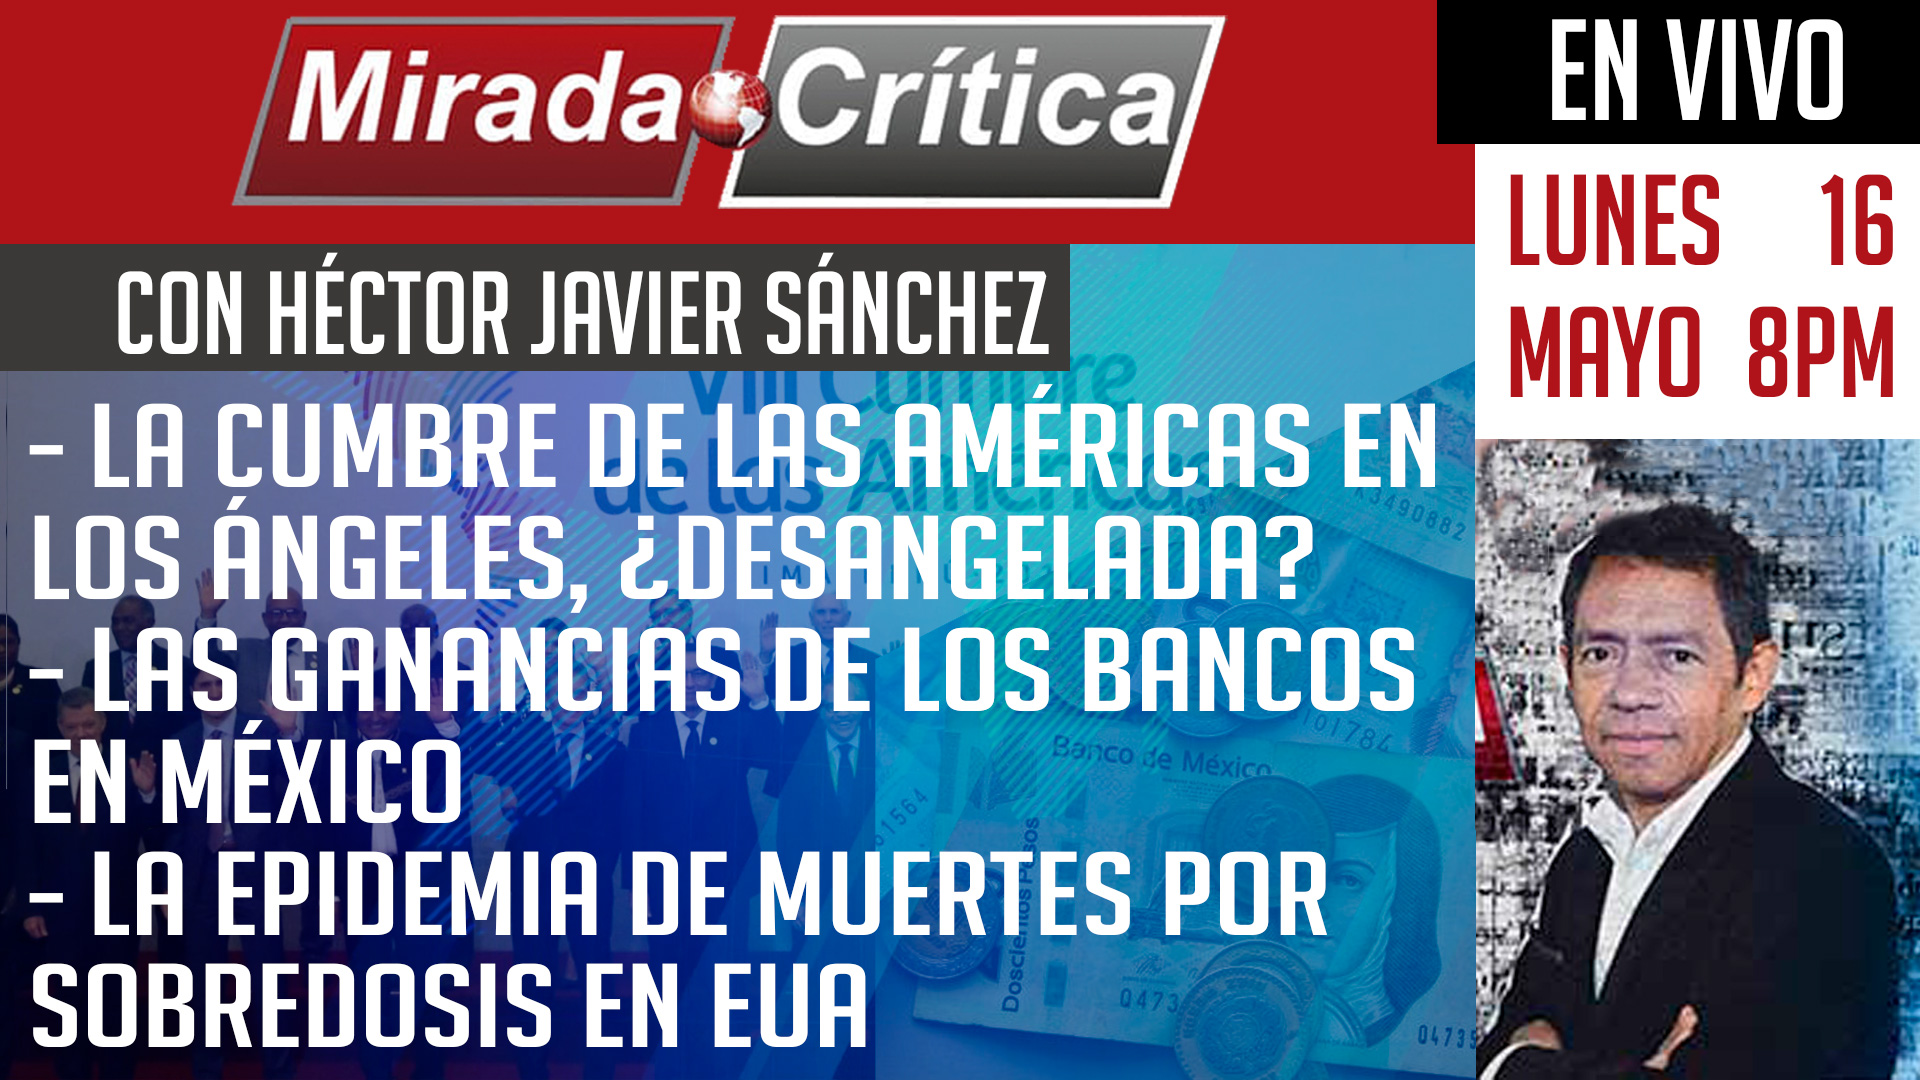 La Cumbre de las Américas en los Ángeles / Las ganancias de los bancos en México - Mirada Crítica